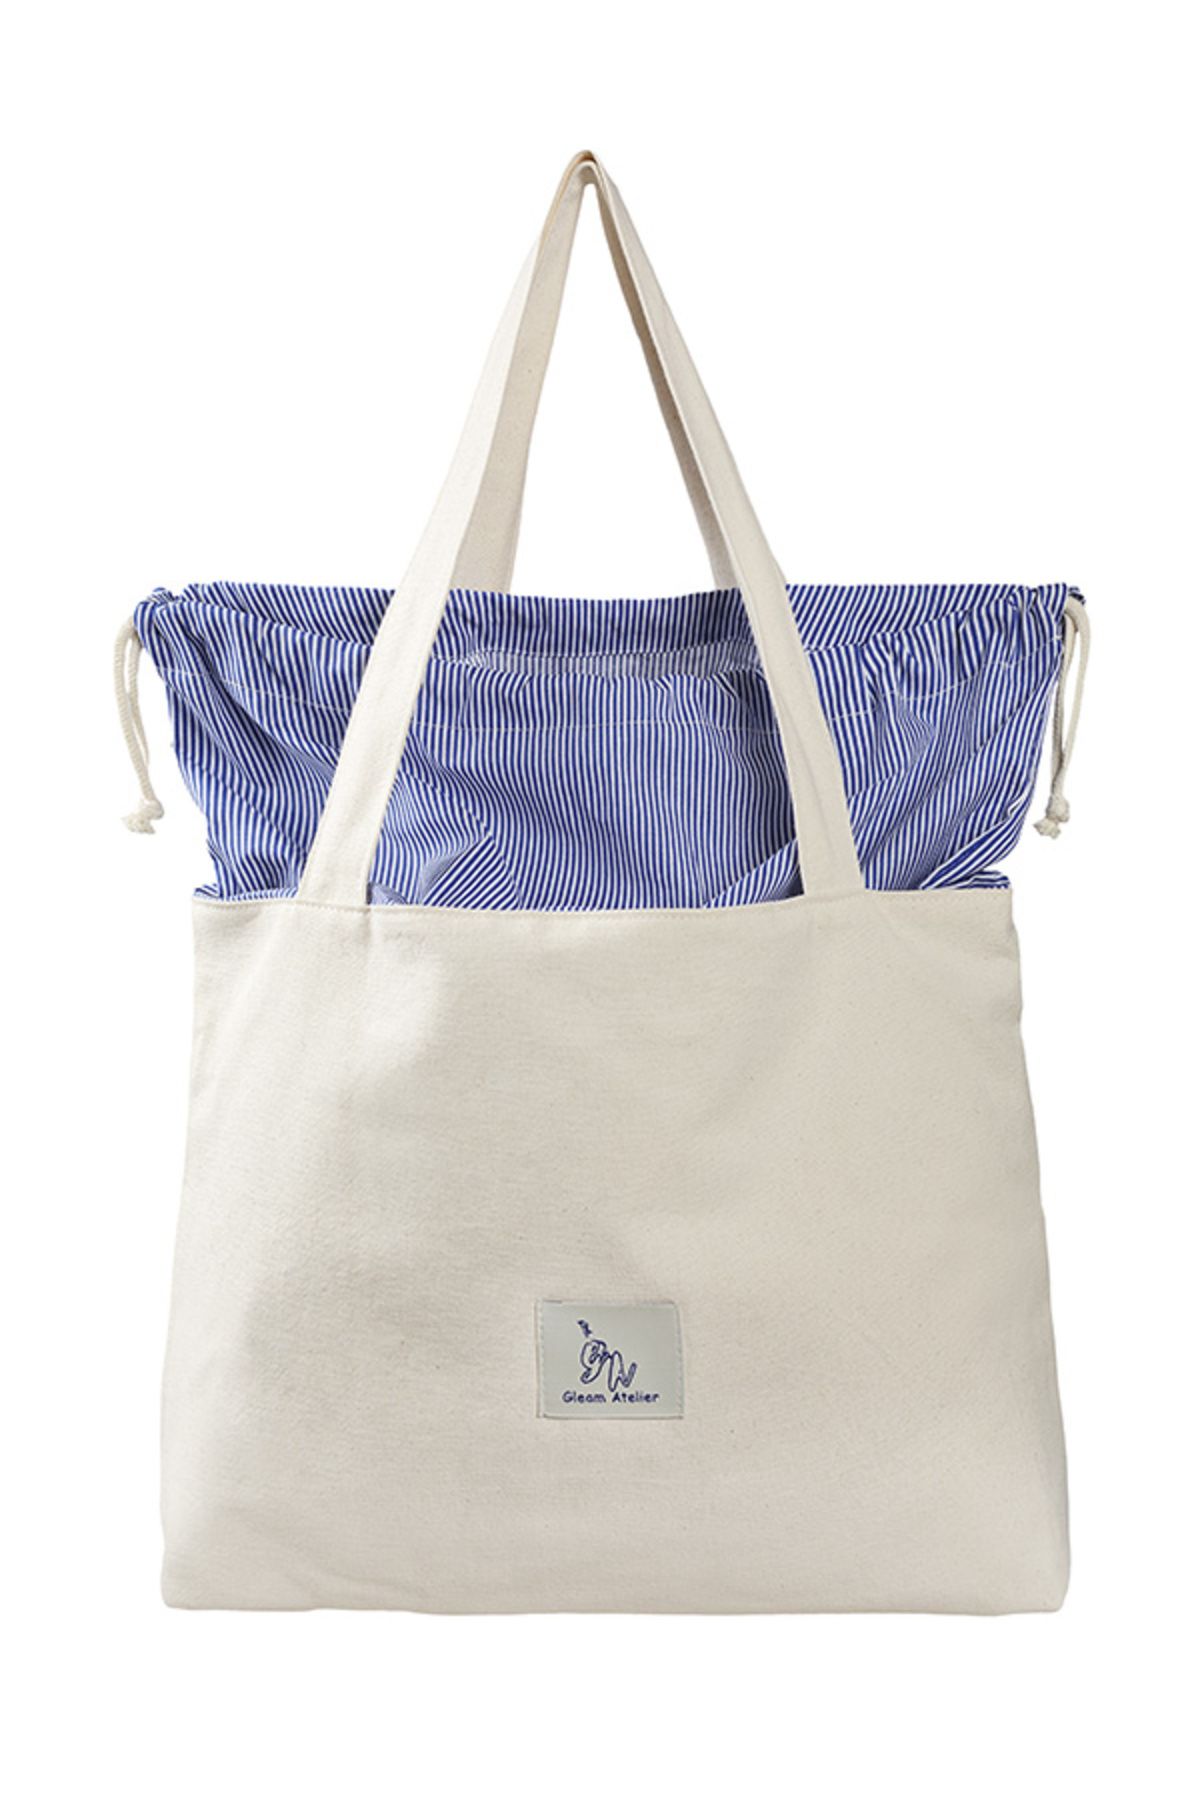 Gleam Atelier Çizgili Büyük Boy Yıkanabilir Bez Çanta,krem-mavi,30*40 Cm, Omuza Takılabilir Uzun Saplı